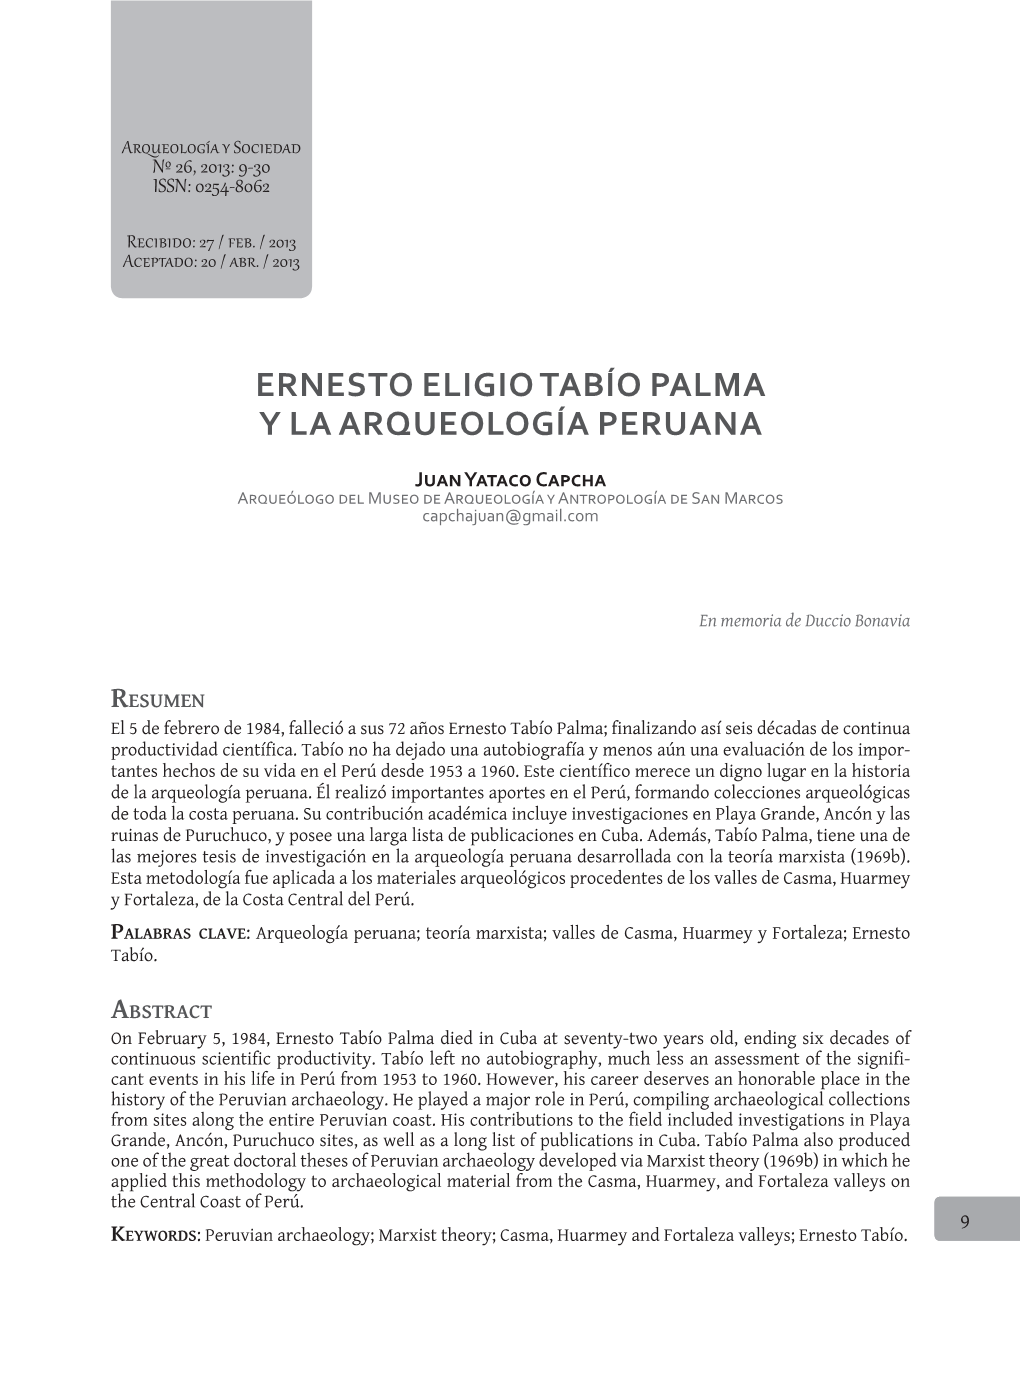 Ernesto Eligio Tabío Palma Y La Arqueología Peruana